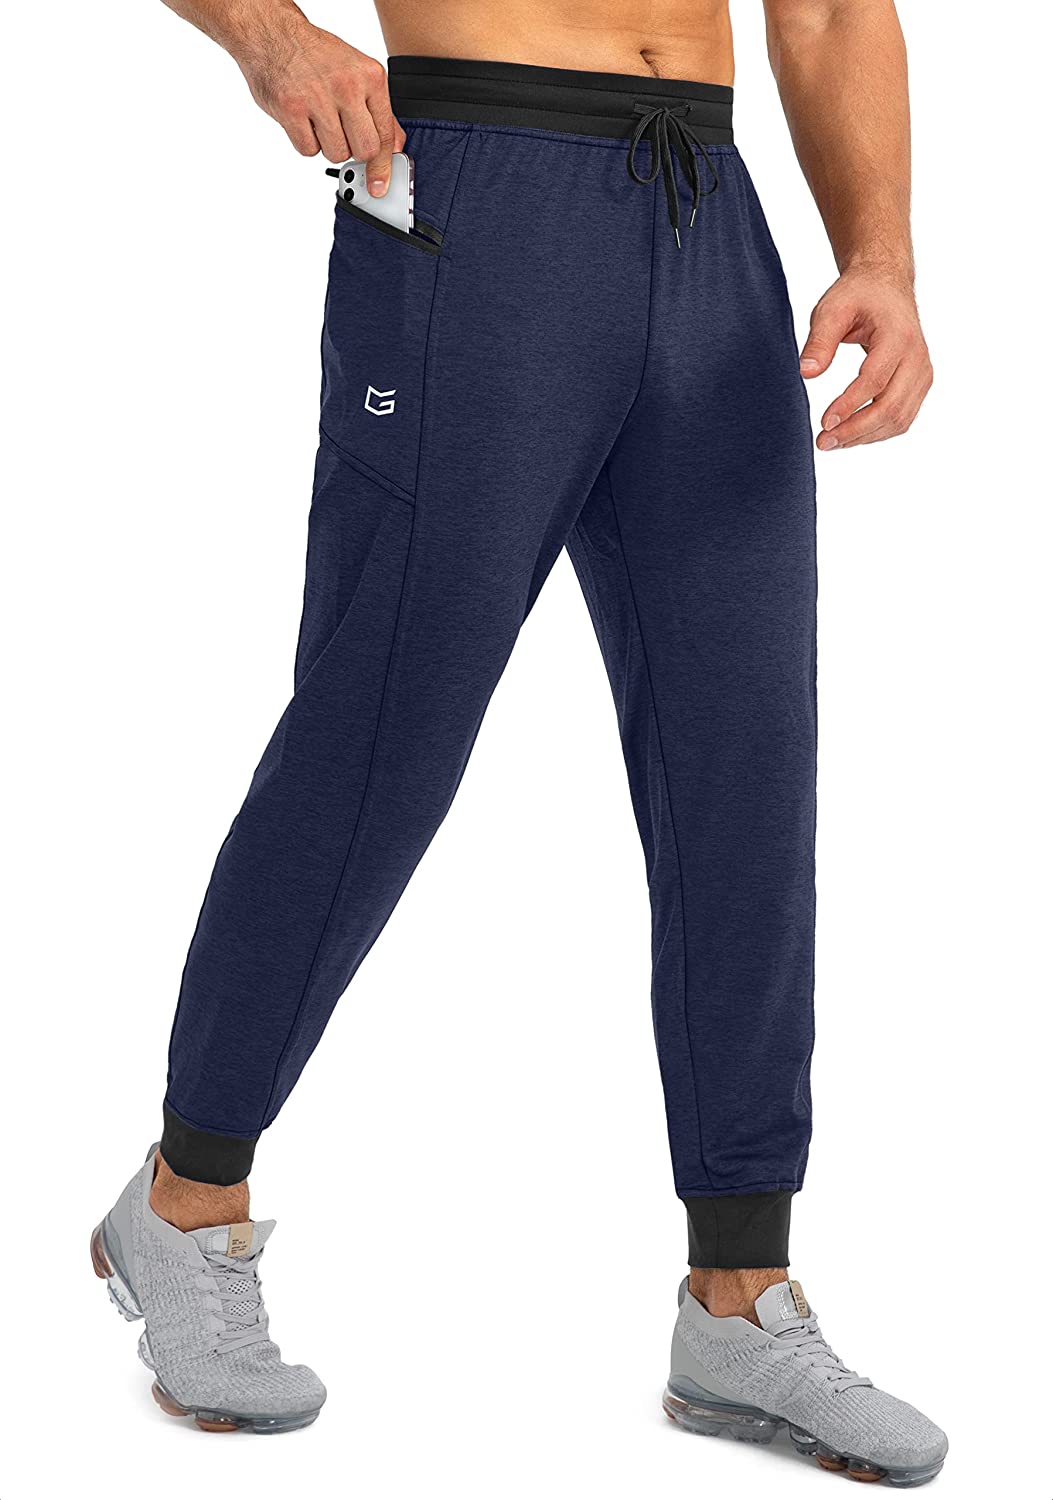 G Gradual Men's Jogger Pants with Zipper Pockets Slim Joggers for Men  Athletic S